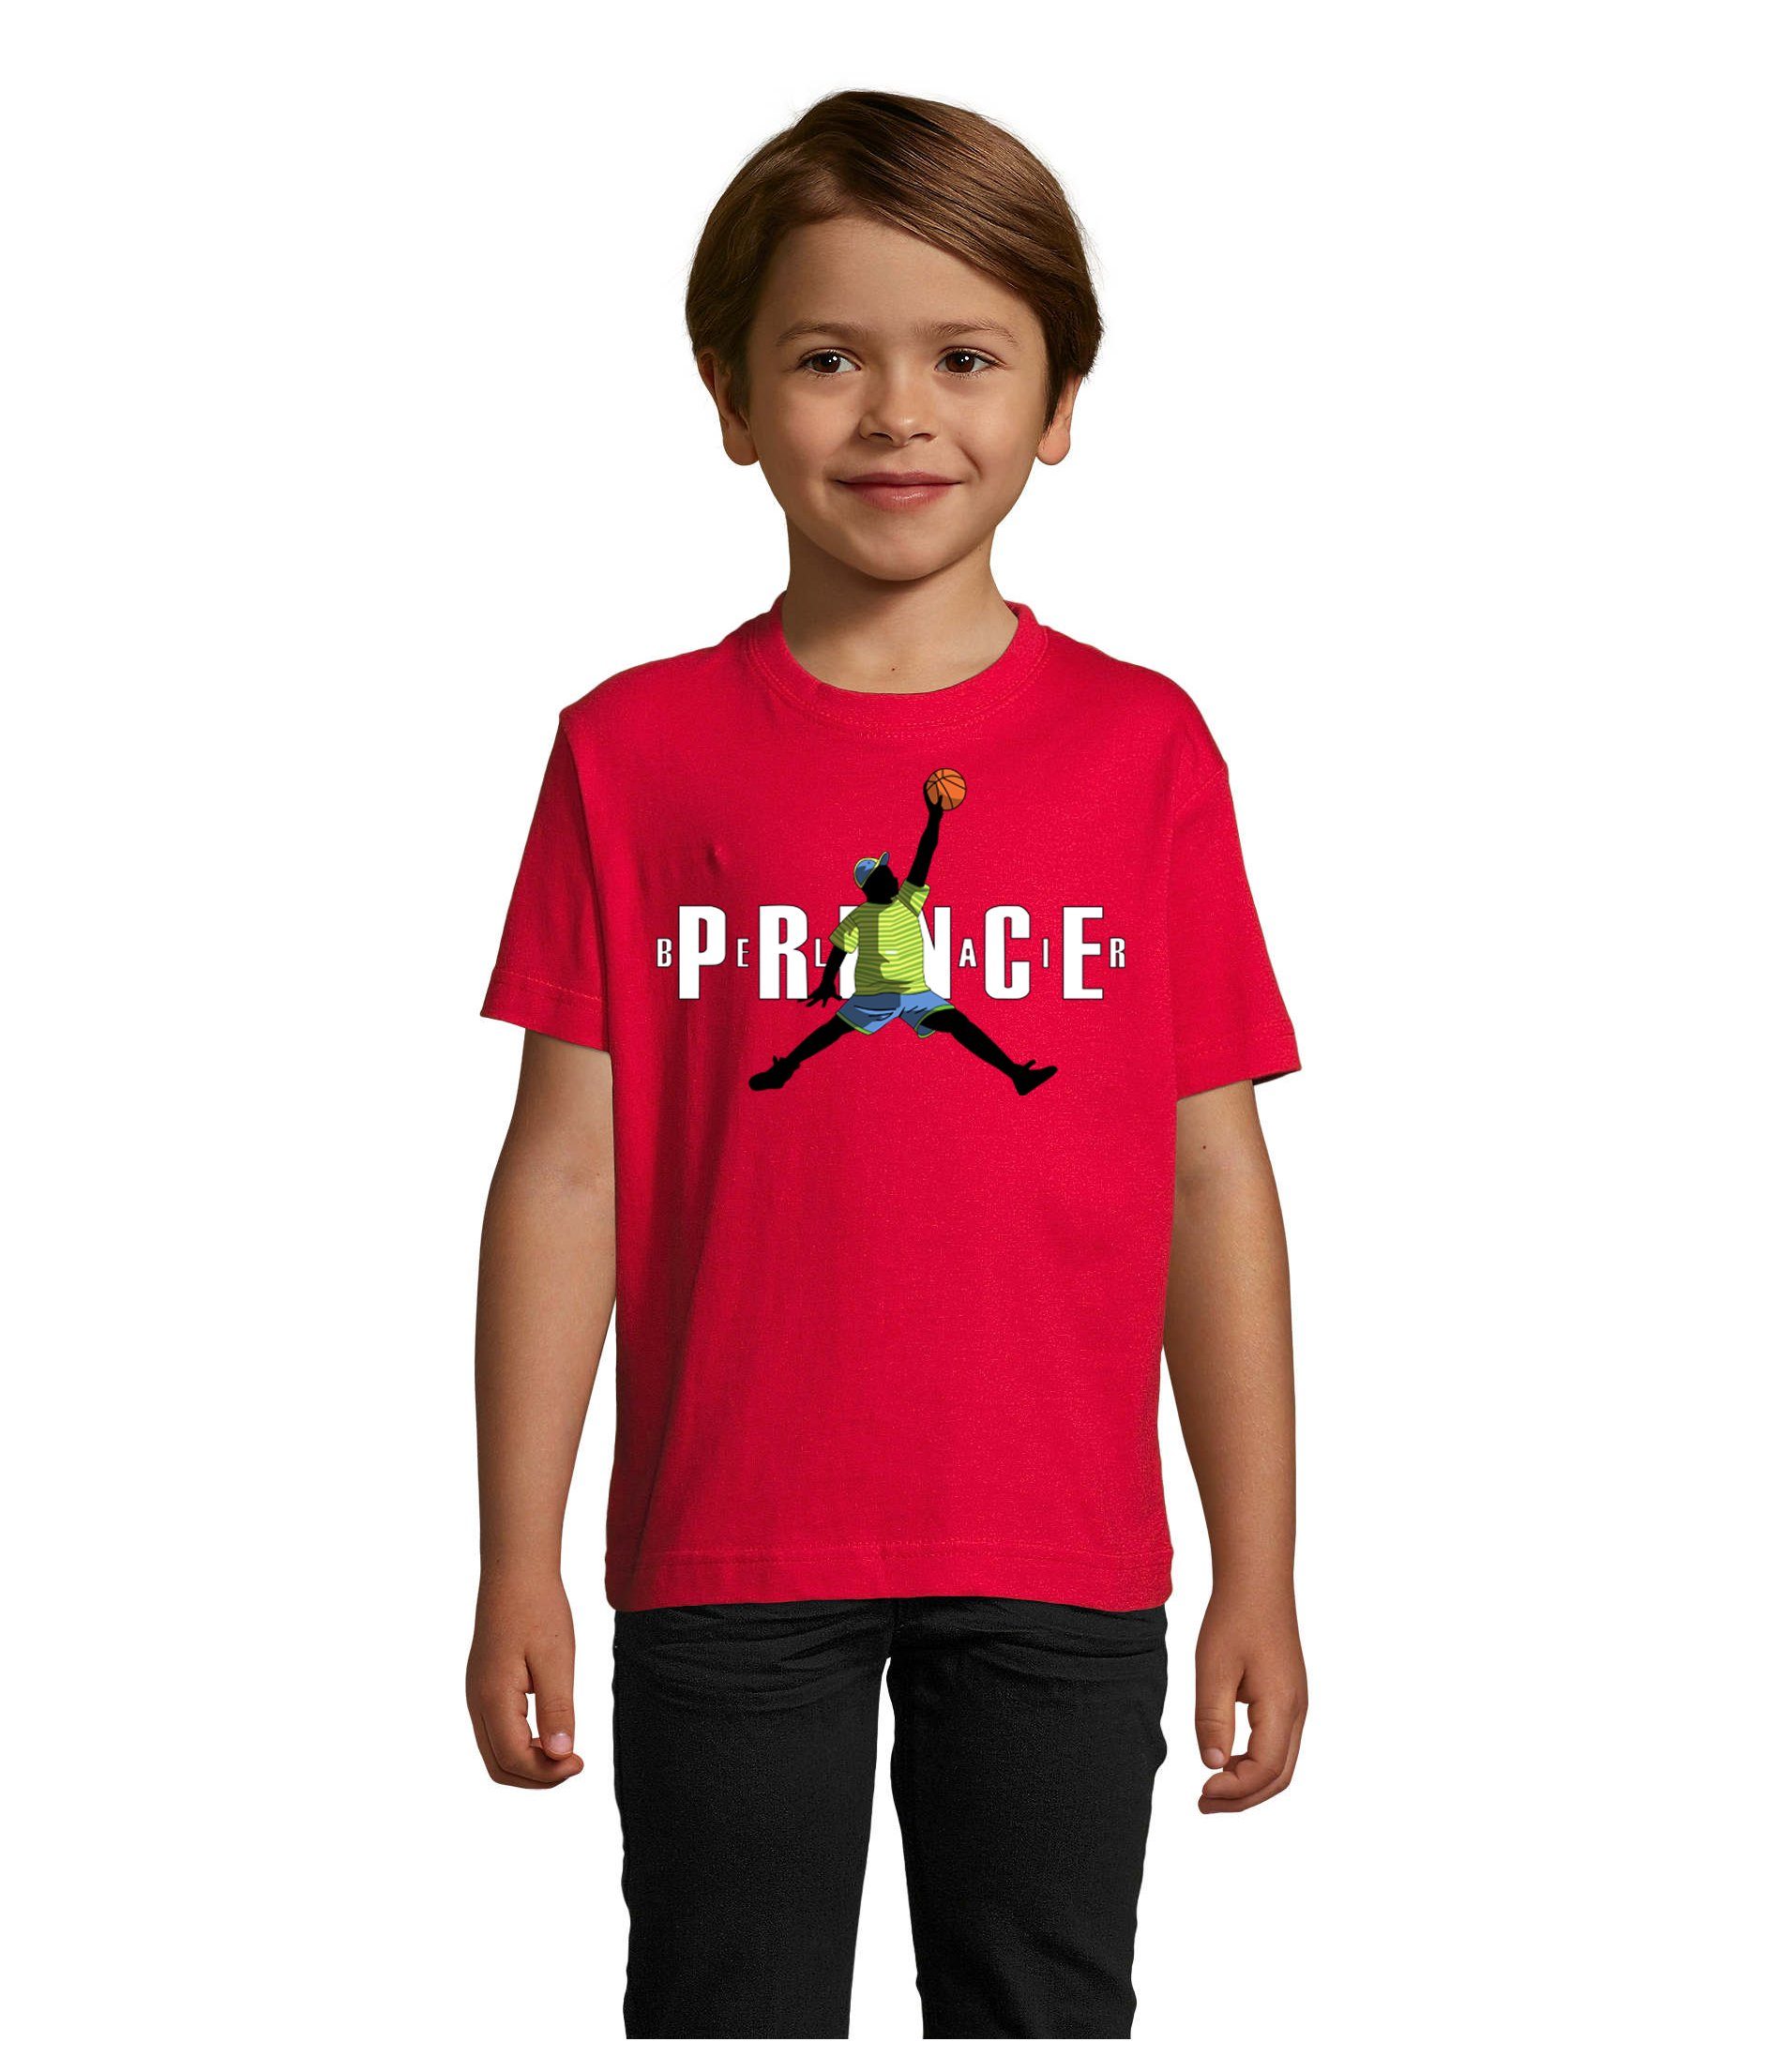 Blondie & Brownie T-Shirt Kinder Jungen & Mädchen Fresh Prince Bel Air Basketball in vielen Farben Rot